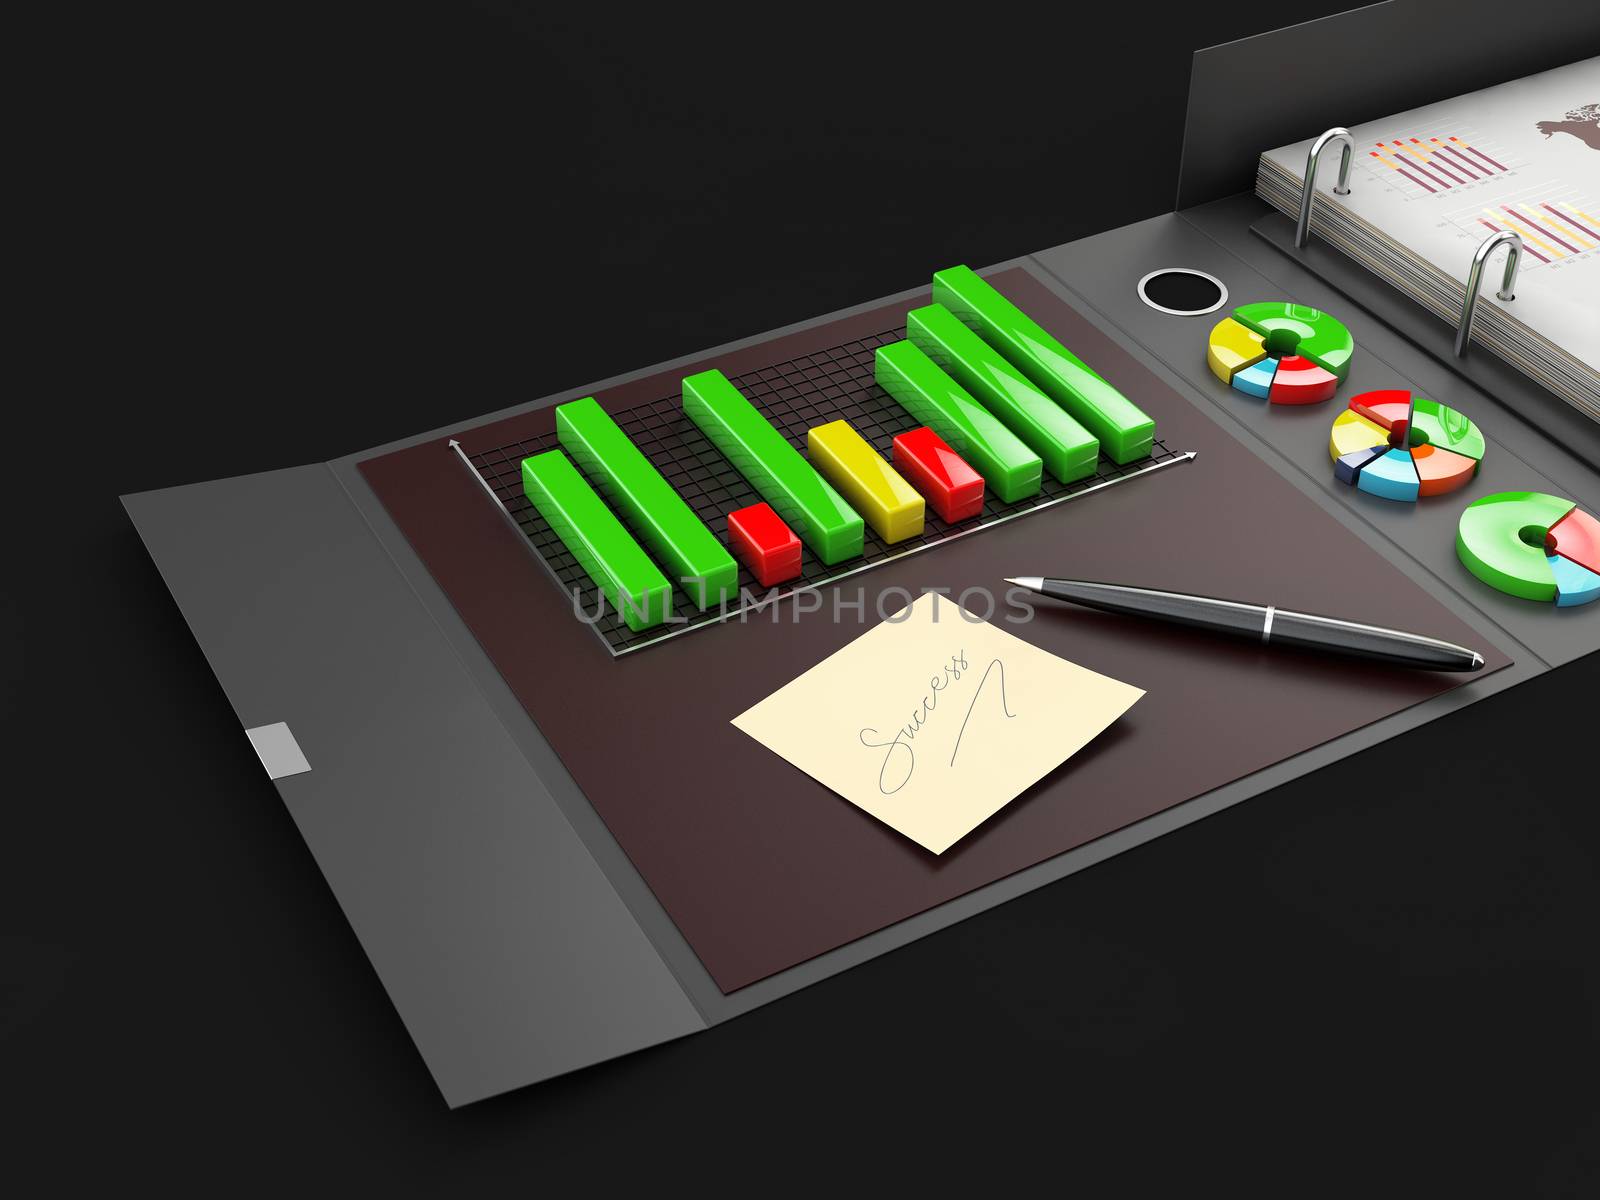 Ring binder folder with charts, 3d Illustration. Office cardboard folder branding presentation by tussik